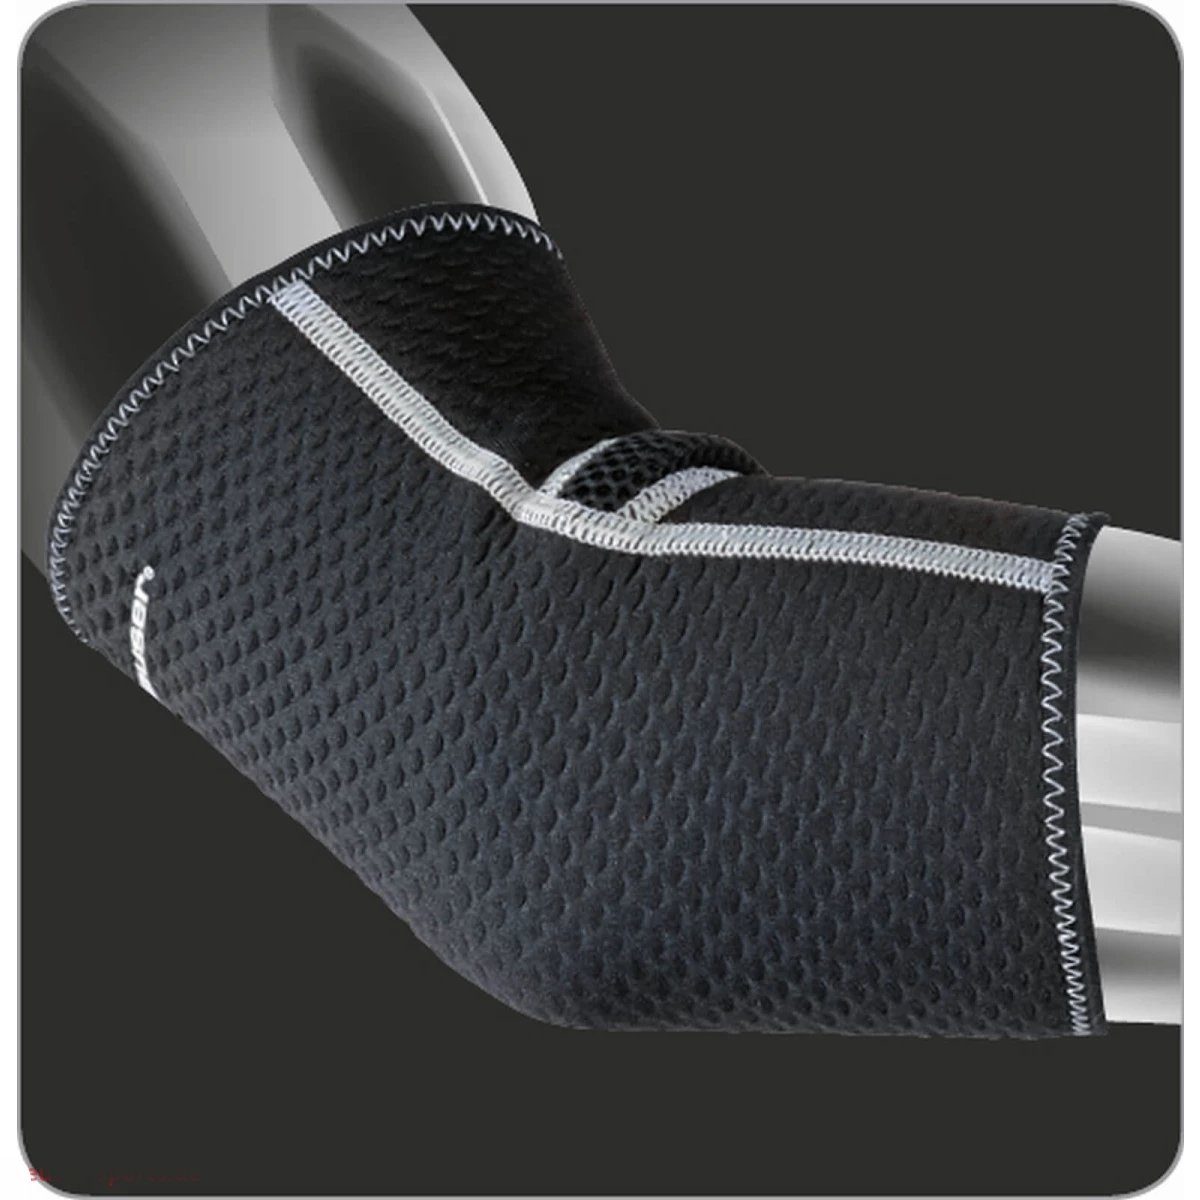 Anatomische XL, - S Ellbogenbandage stützt Polster Ellenbogenschutz ohne und Neopren Ellbogen, Deuser Kompression Deuser-Sports Form, schützt